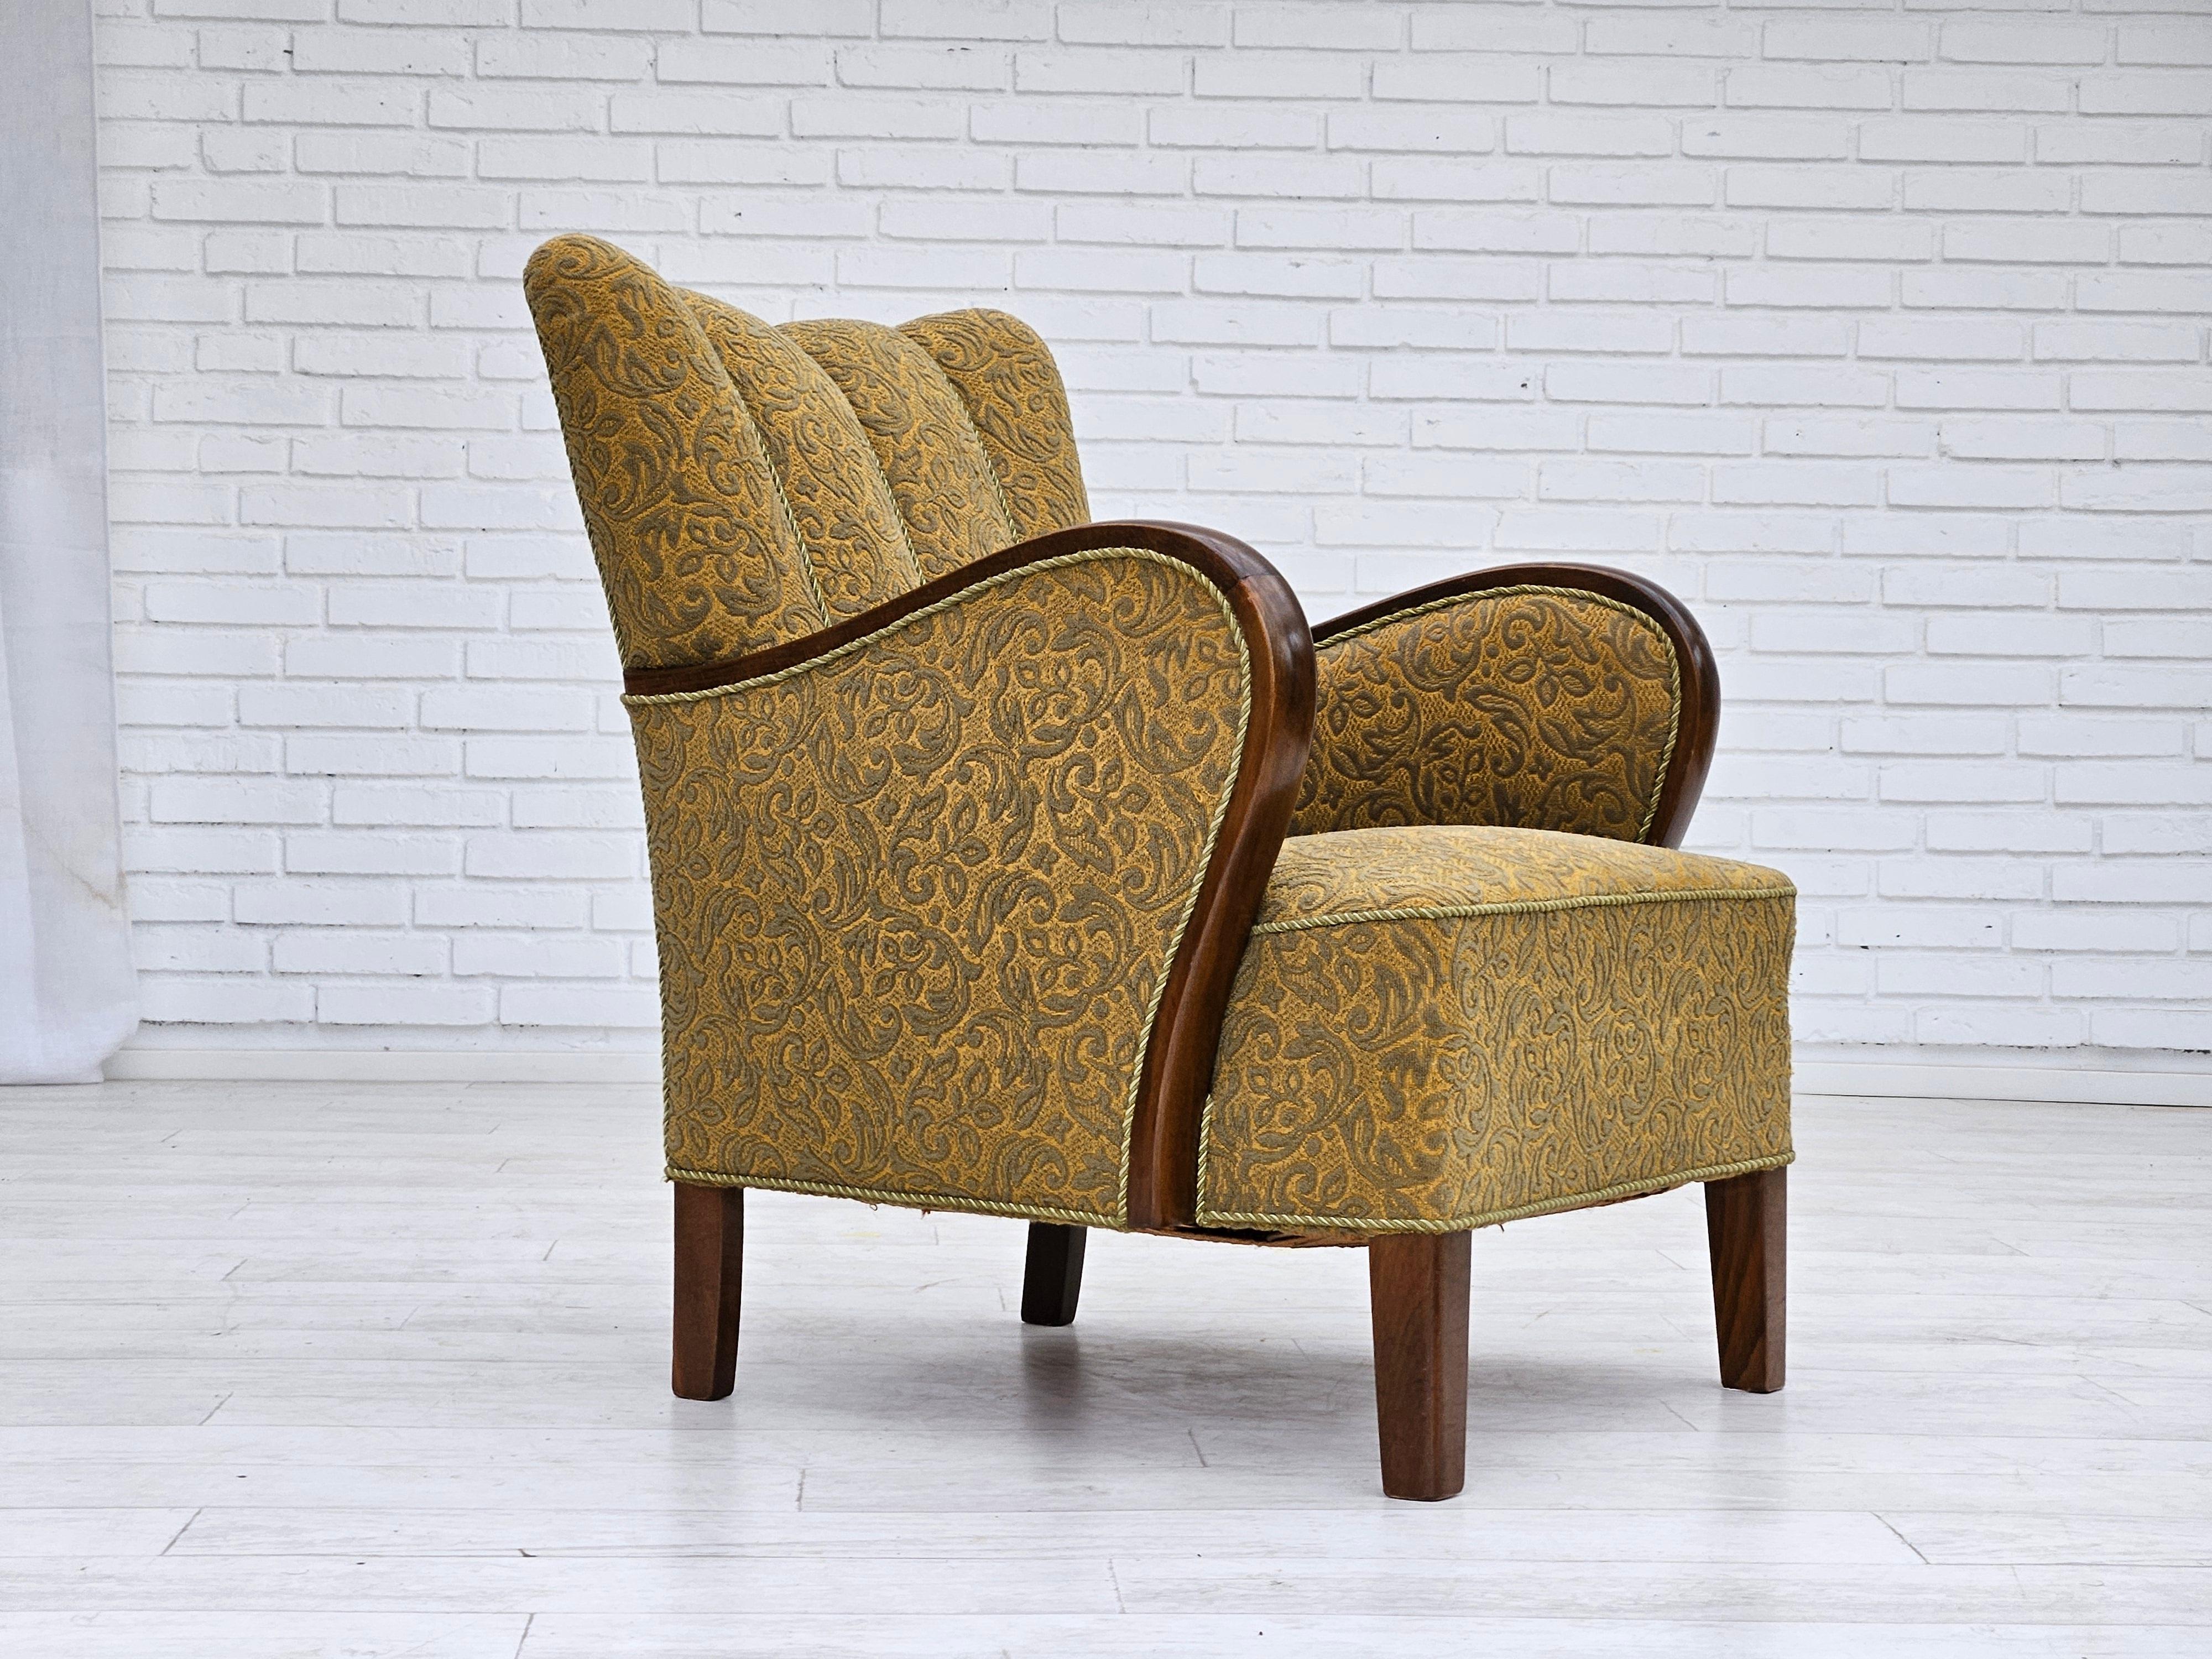 Fauteuil danois des années 1960 en très bon état d'origine : pas d'odeurs ni de taches. Tissu d'ameublement en coton/laine vert clair. Ressorts en laiton dans l'assise, pieds en hêtre. Fabriqué par un fabricant de meubles danois dans les années